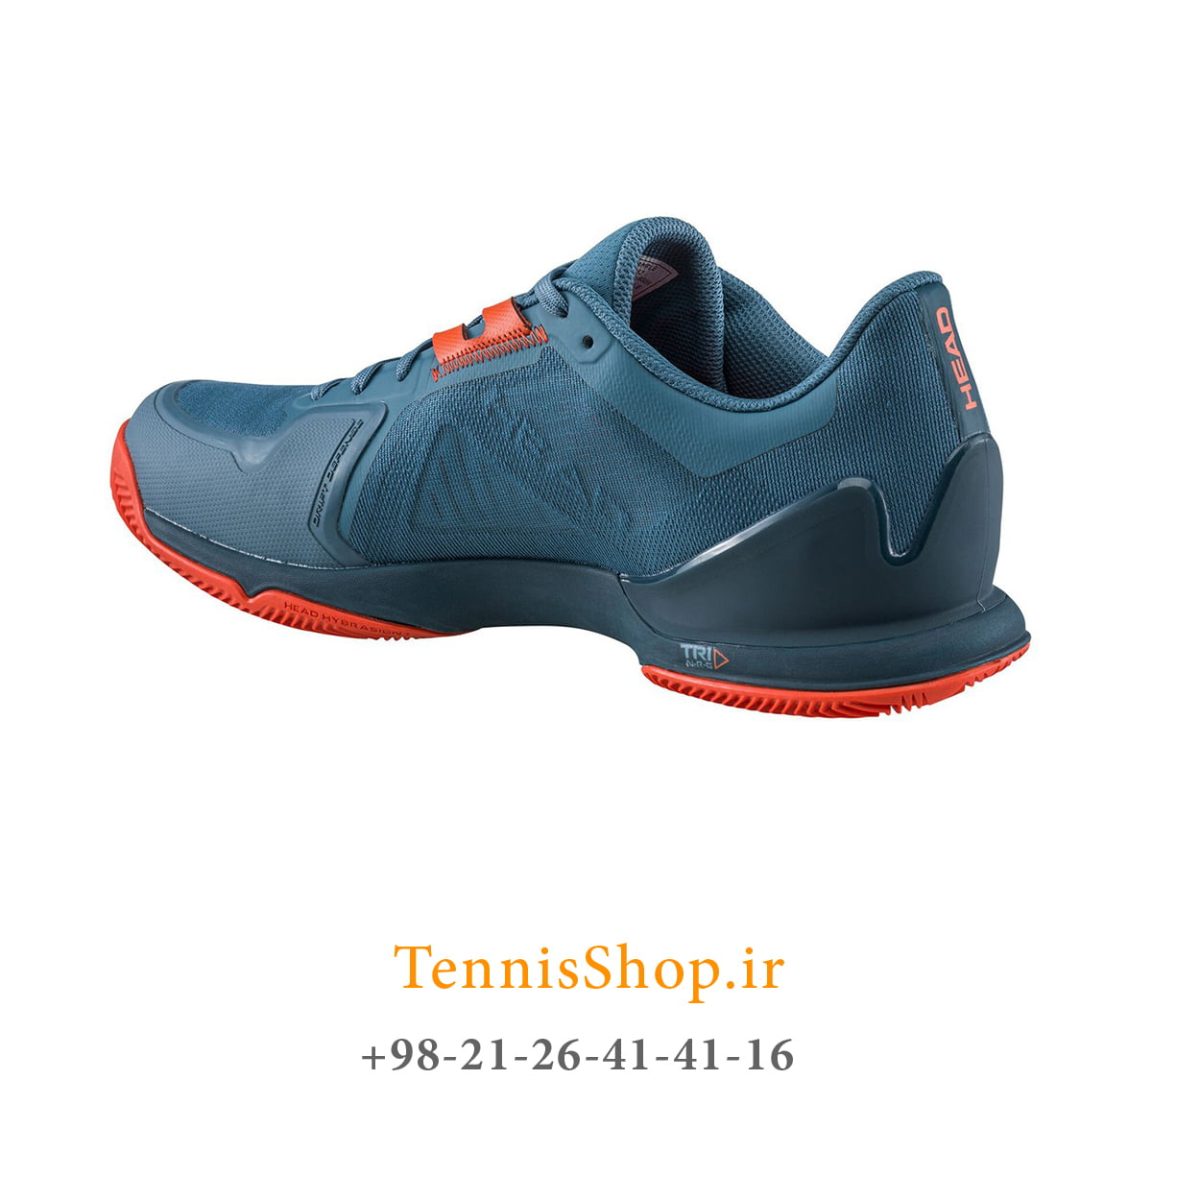 کفش تنیس هد سری SPRINT PRO3.5 مدل clay رنگ آبی قرمز